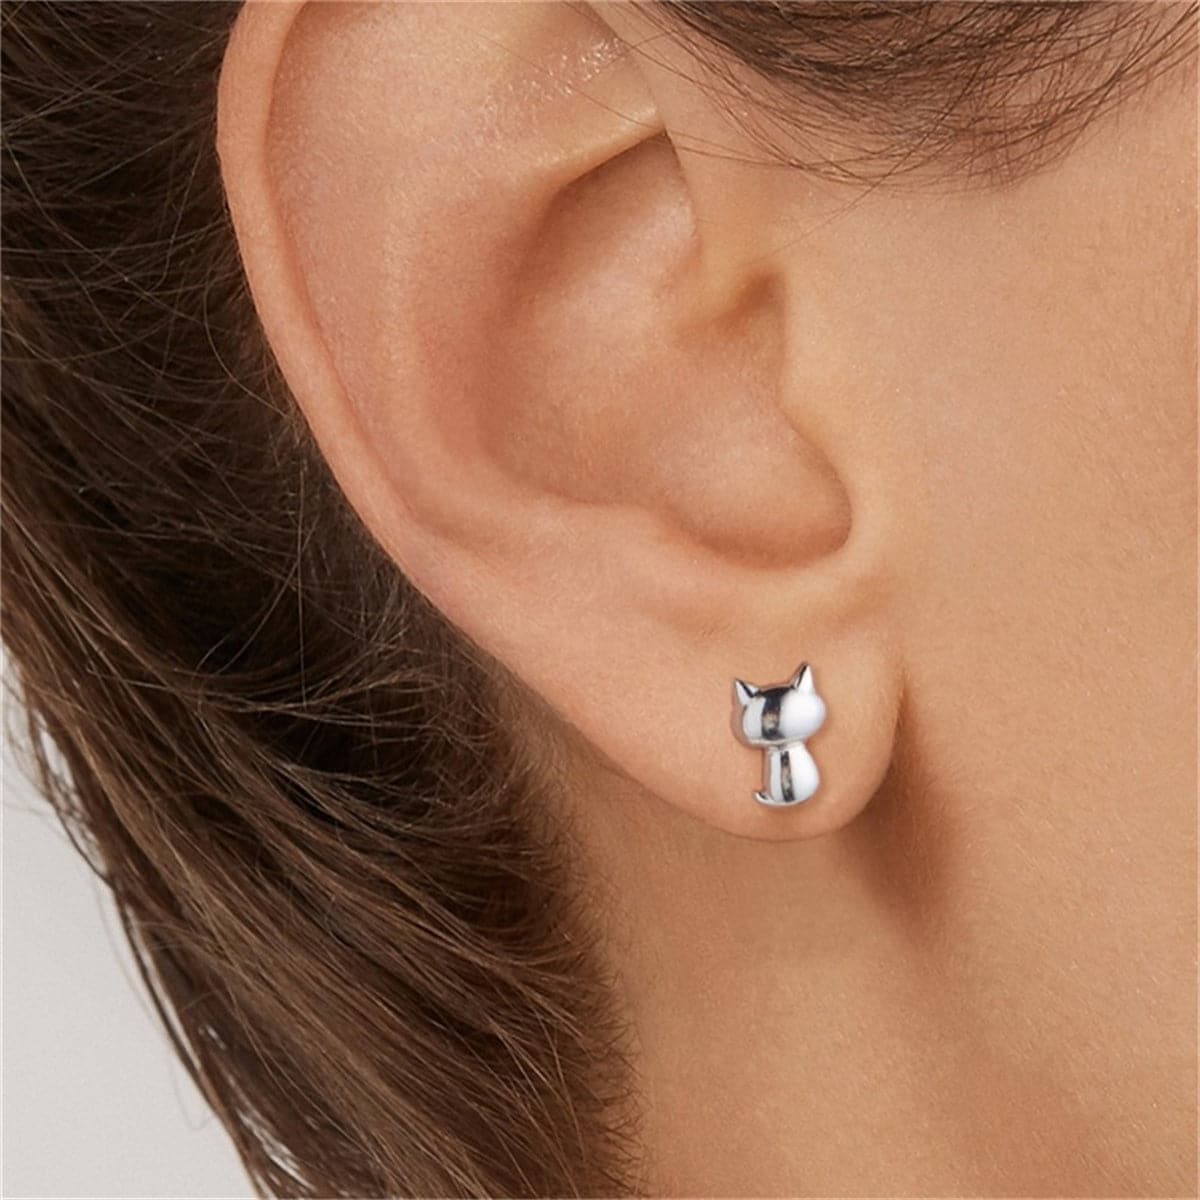 Red Enamel & Sterling Silver Kitty Paw Asymmetrical Stud Earrings